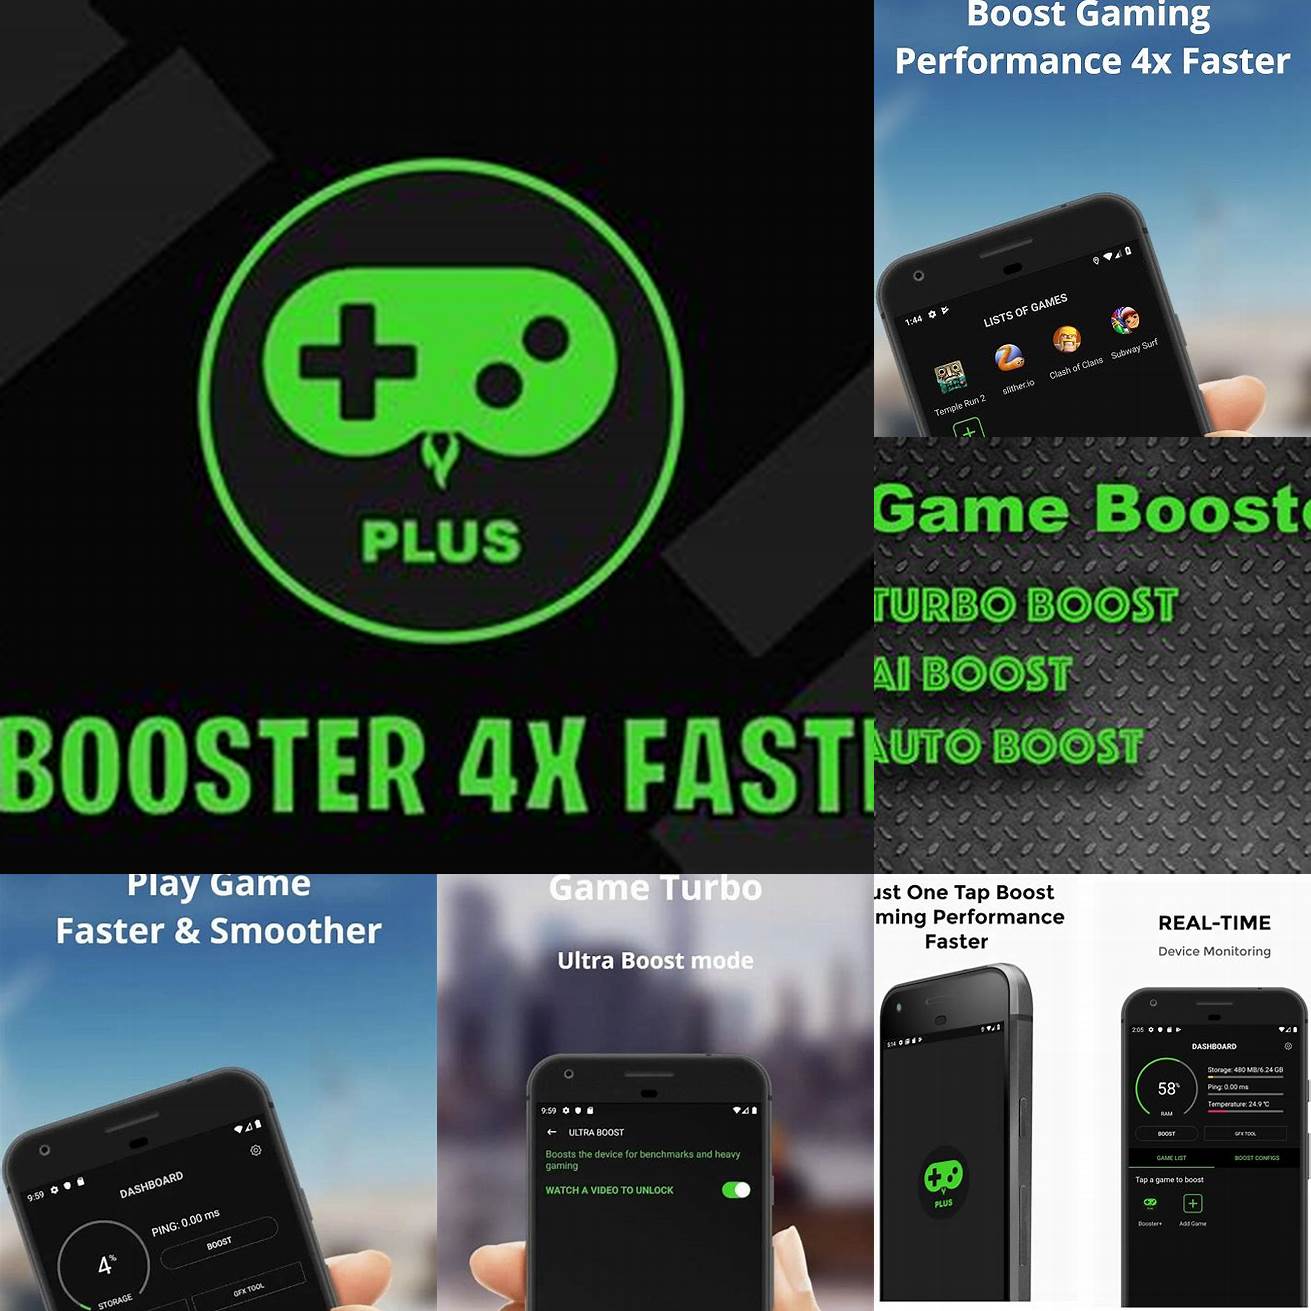 Optimasi Grafis Game Booster 4x Faster Pro Apk akan membantu meningkatkan kualitas grafis game Anda dengan mengoptimalkan pengaturan grafis pada perangkat Anda